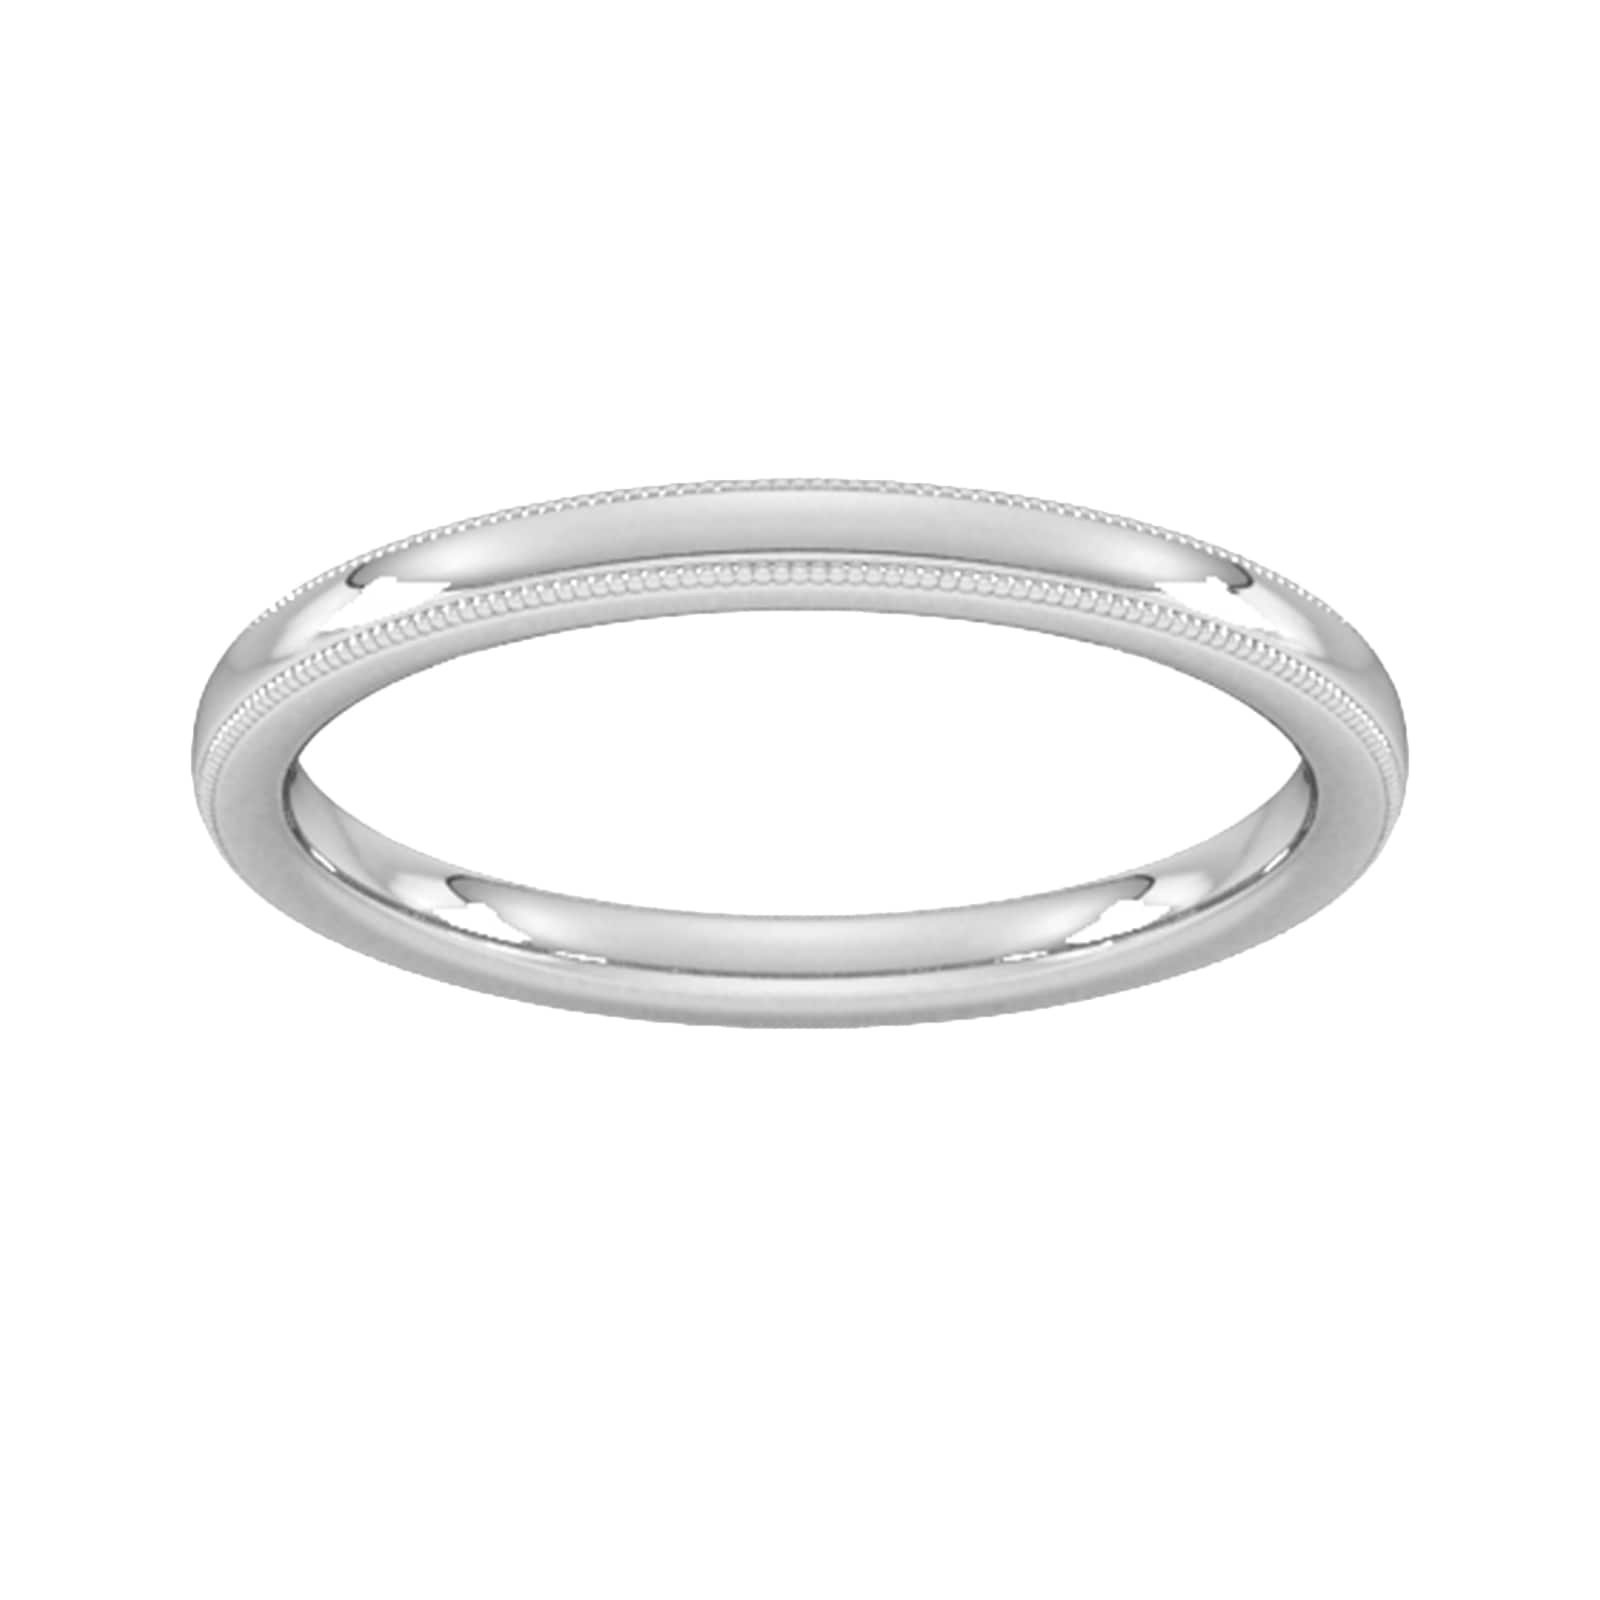 2mm Slight Court Standard Milgrain Edge Wedding Ring In 9 Carat White Gold - Ring Size X